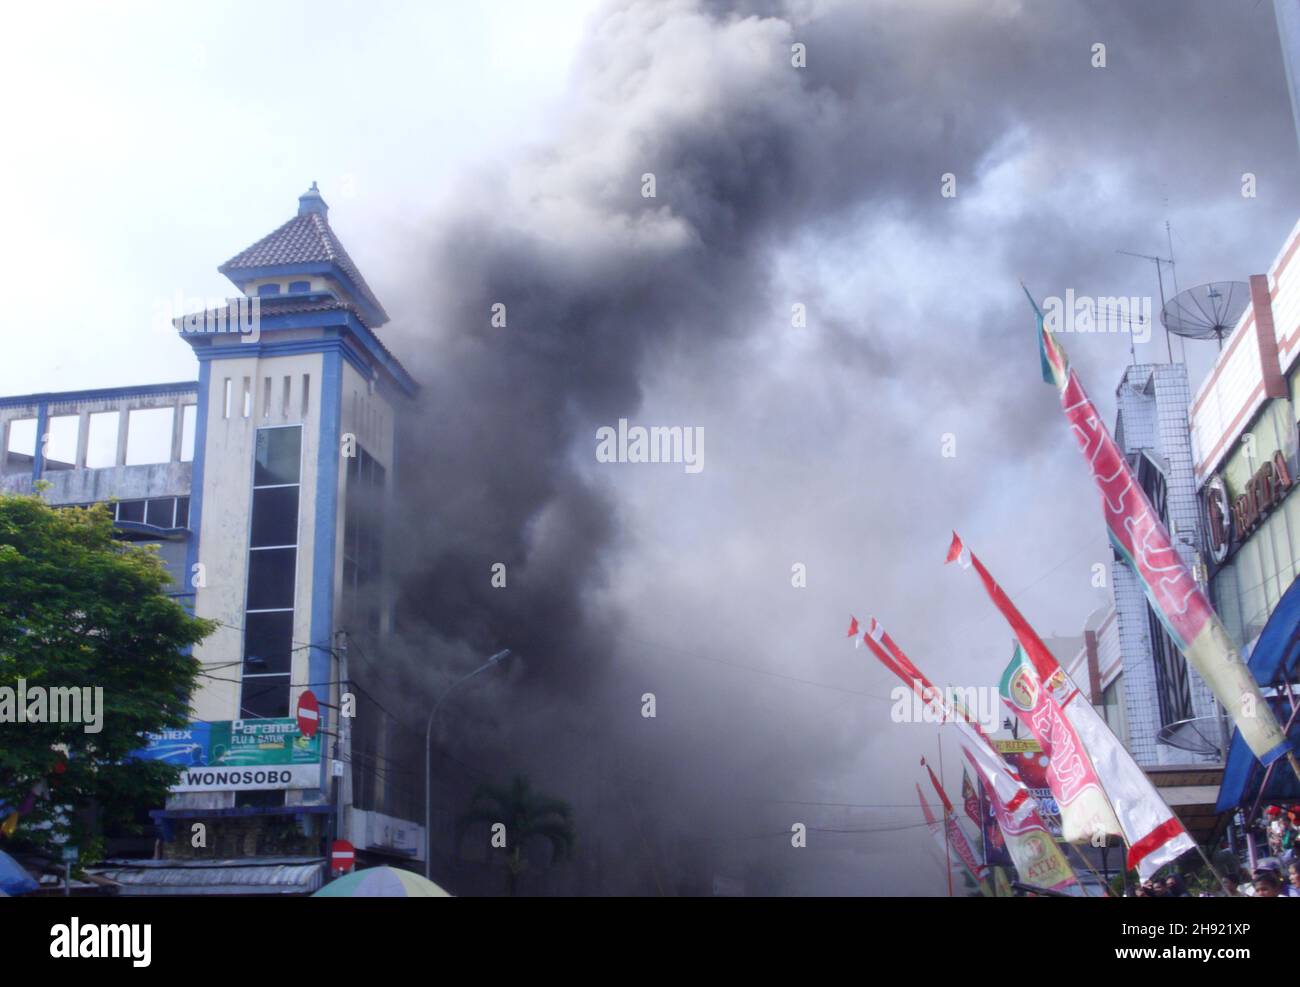 El fuego envuelve un edificio en un mercado tradicional en Indonesia Foto de stock